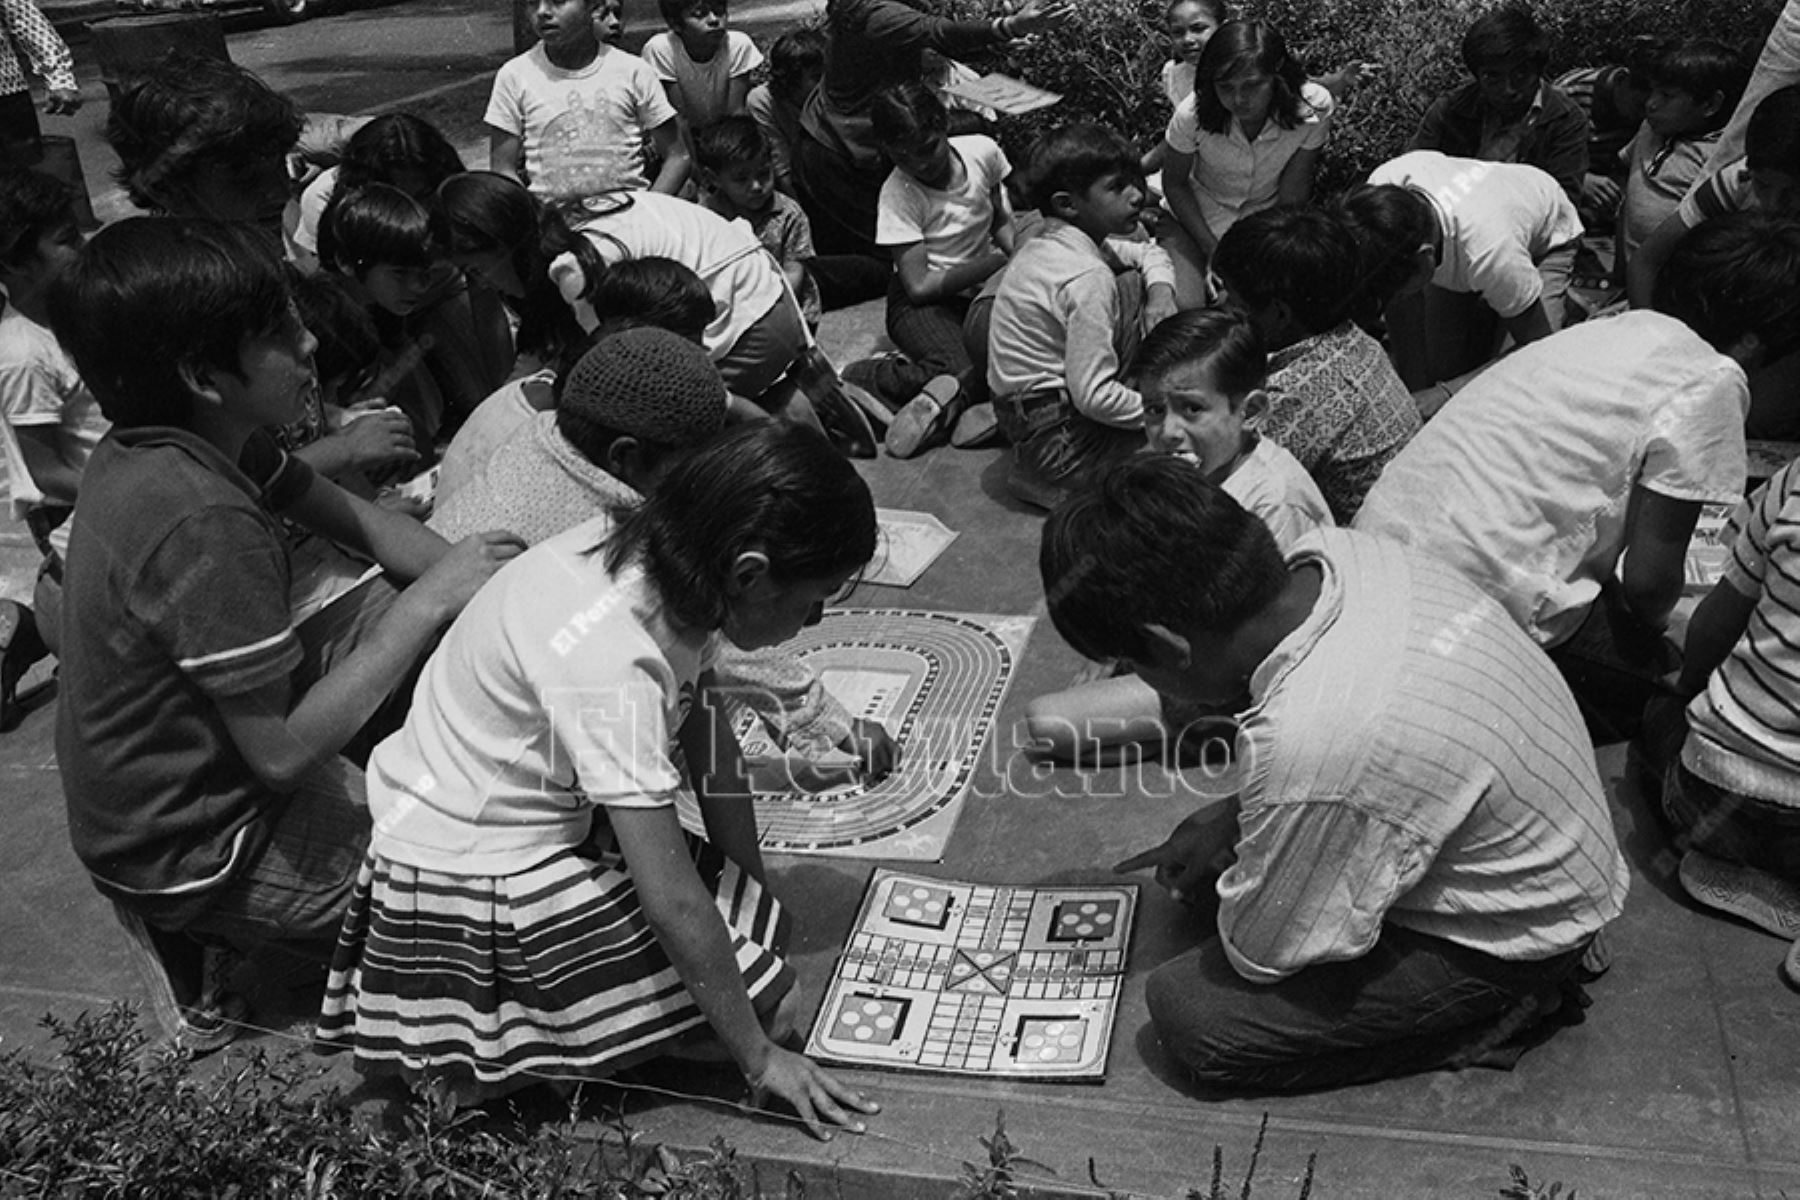 Lima - 17 diciembre 1974 / Campaña del diario La Crónica "En busca del juego perdido" por los barrios de  Lima para promover  esos juegos que ya entonces parecían escaparse de la memoria colectiva. 
Foto Archivo Histórico de El Peruano